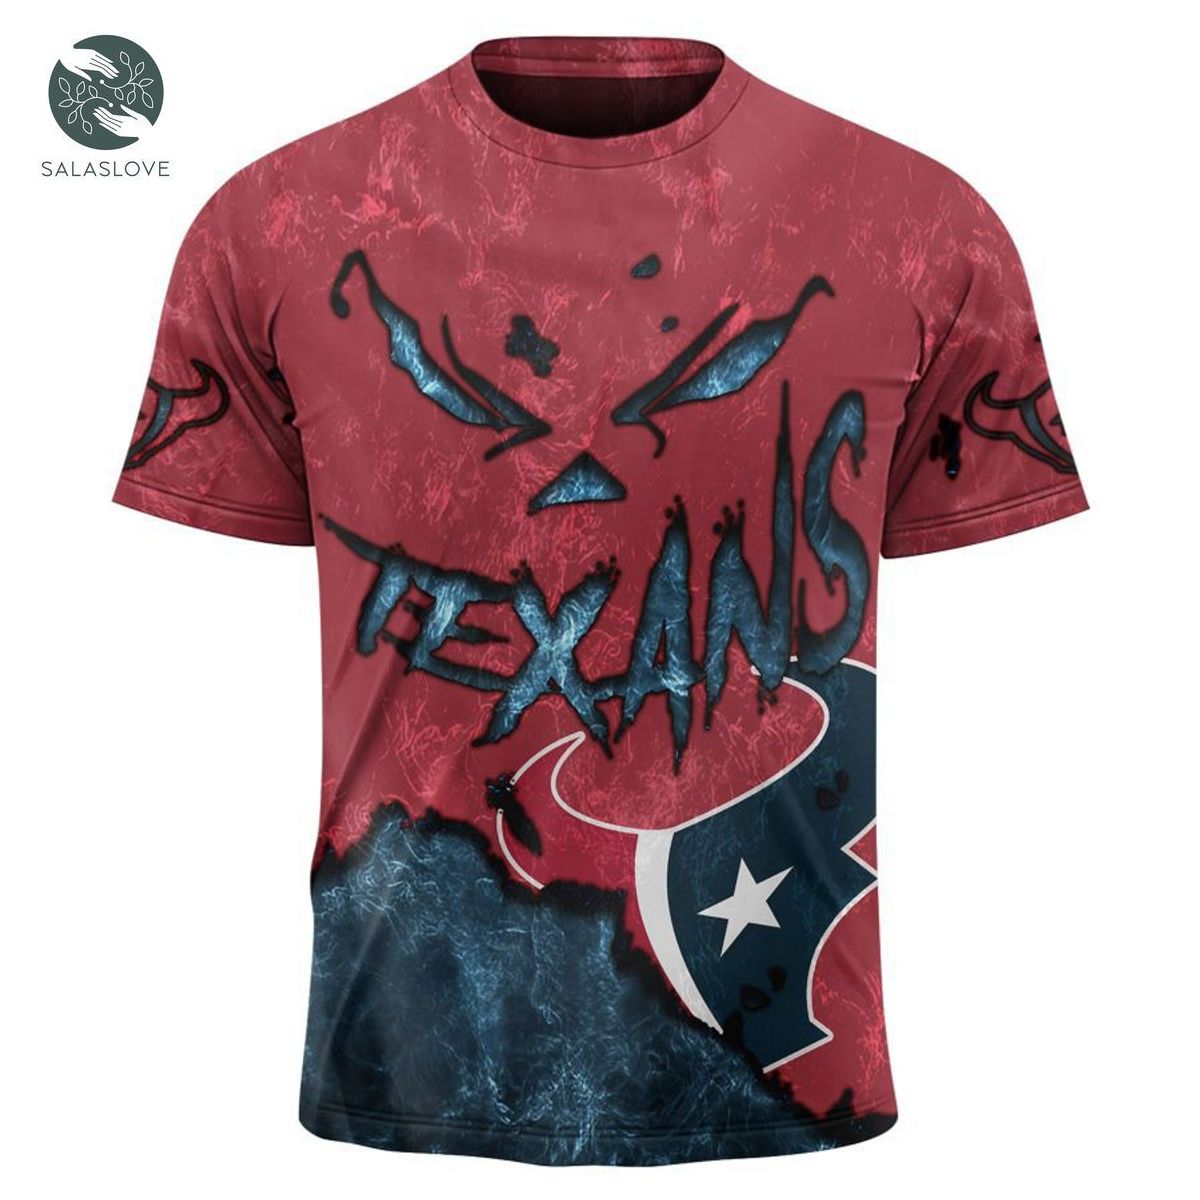 Houston Texans T-shirt 3D devil eyes gift for fans